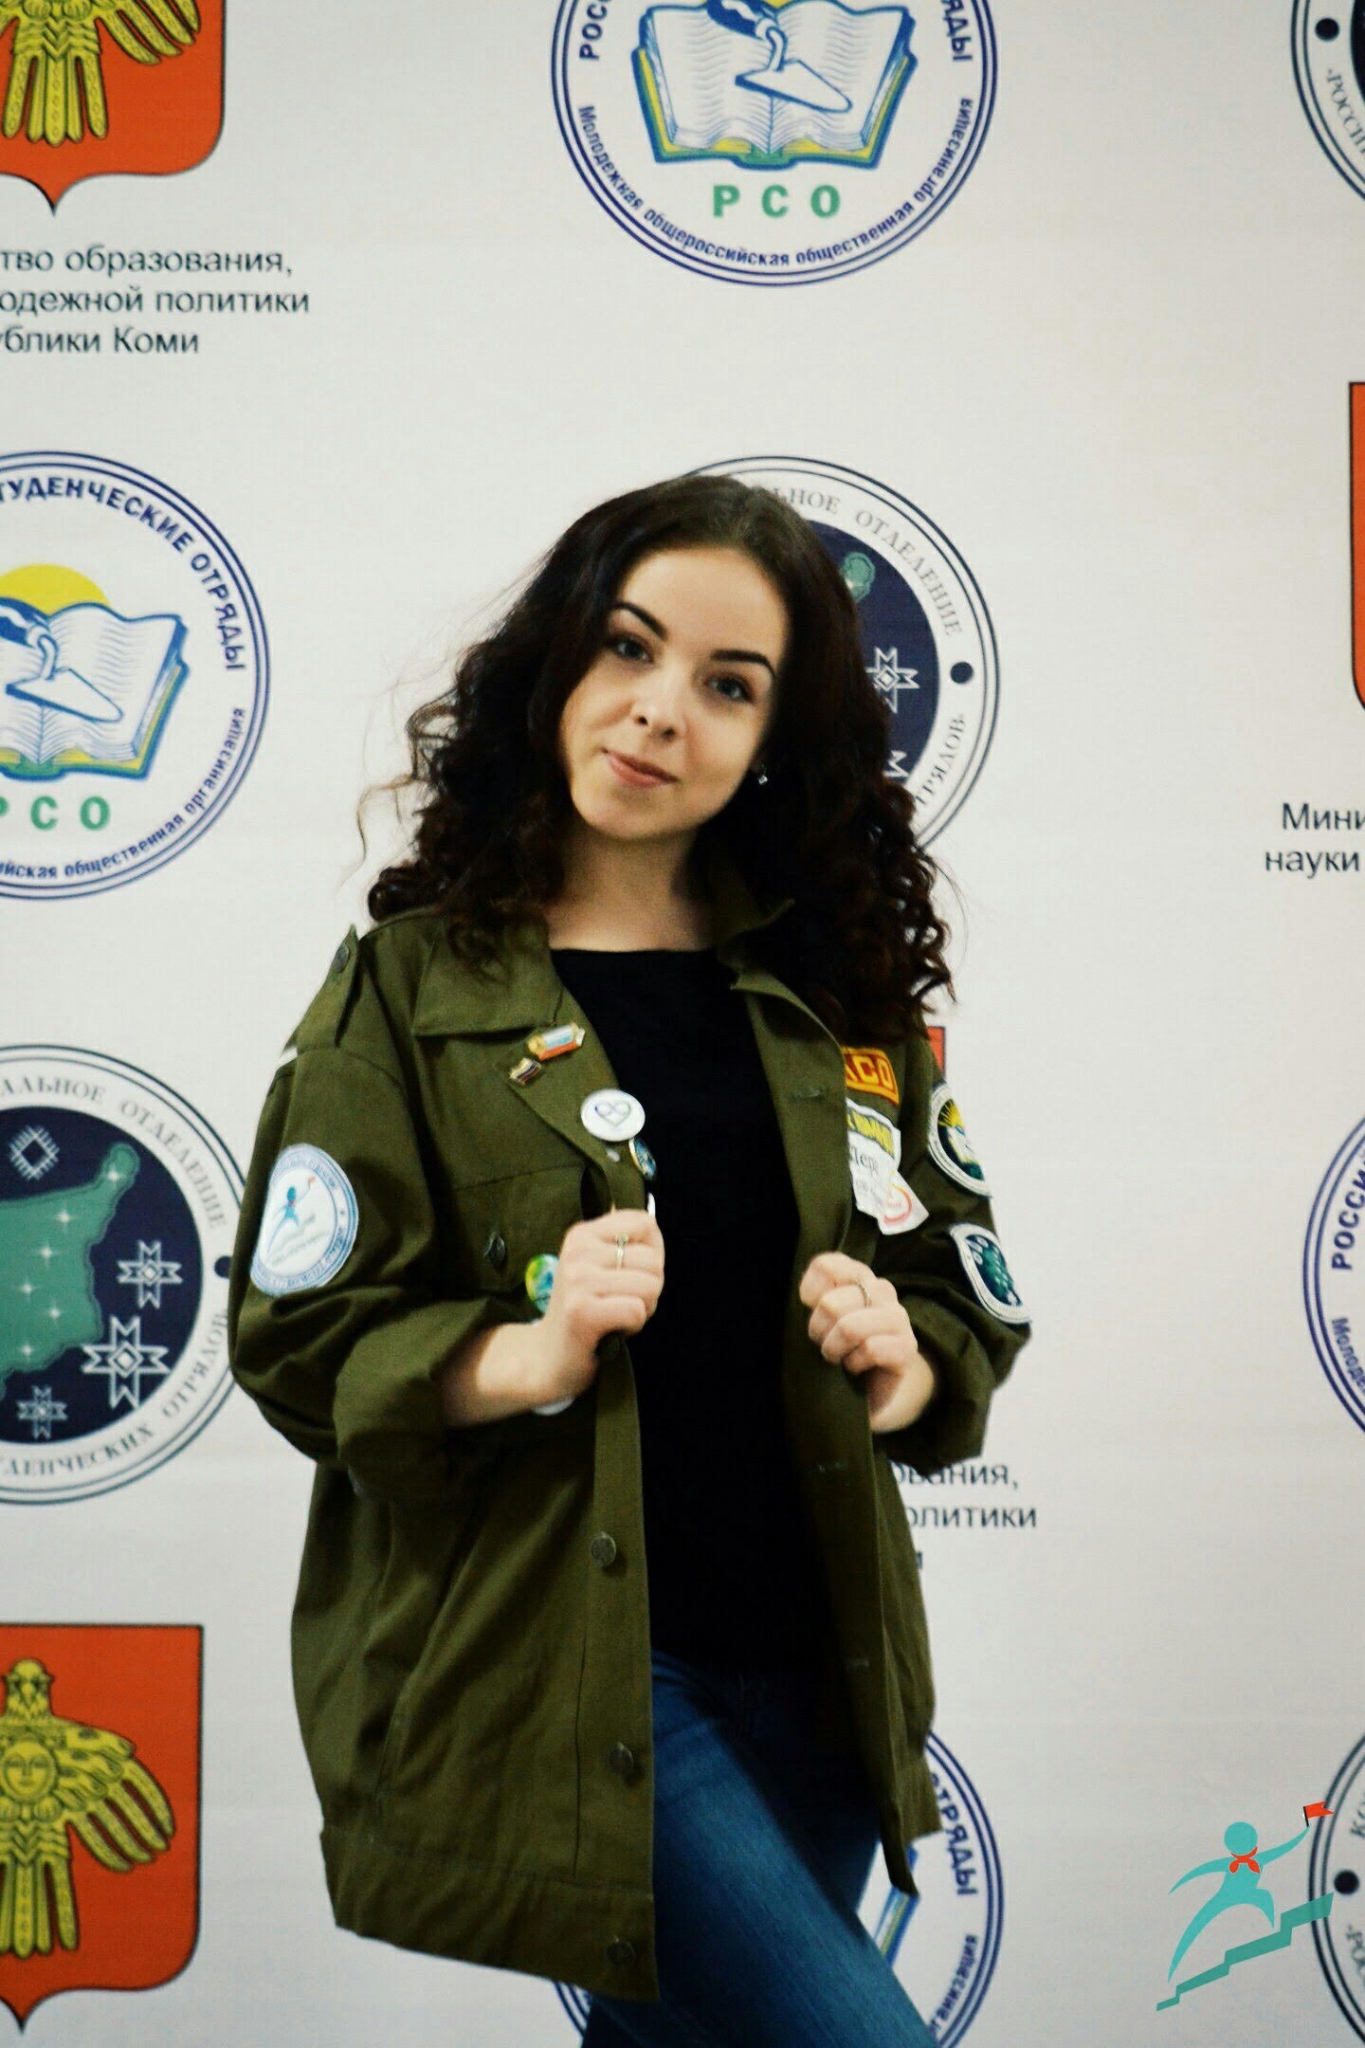 Определились победительницы конкурса «Зачетная студентка» на портале PG11.ru